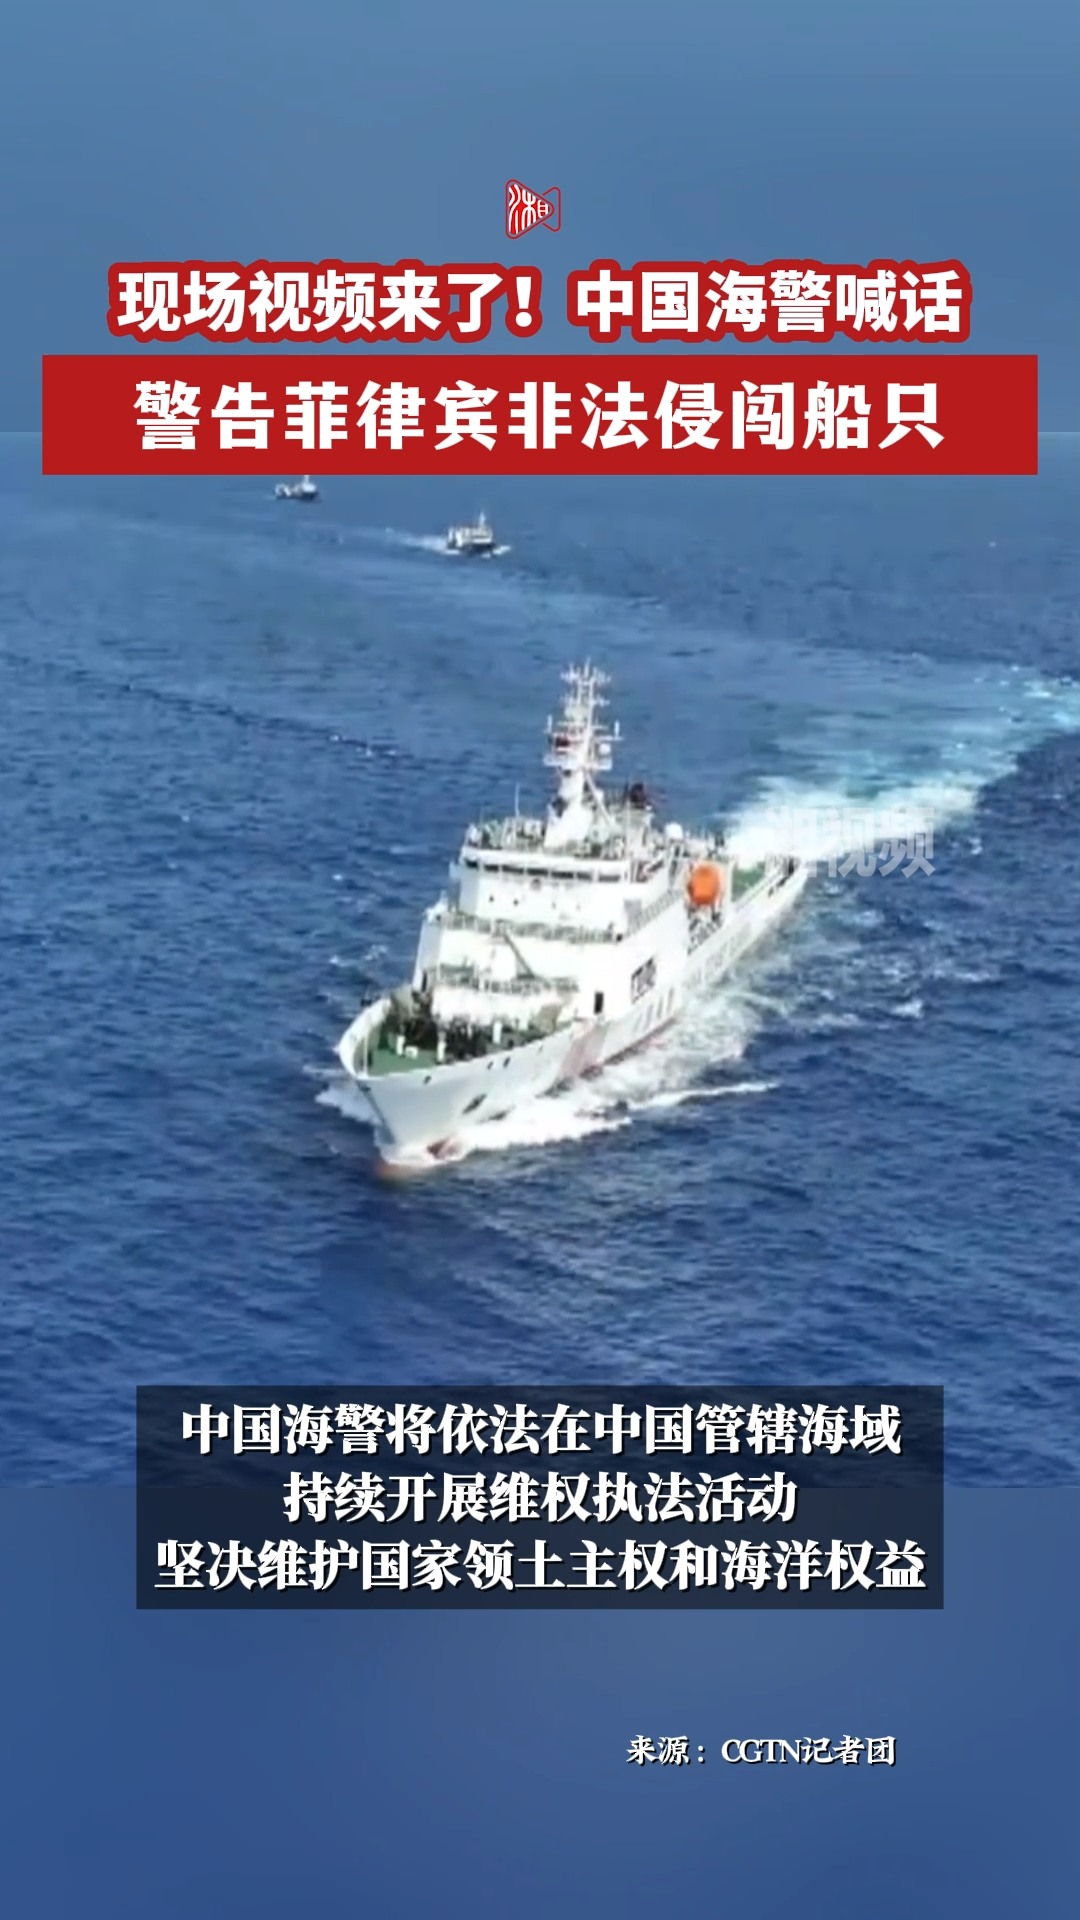 现场视频来了！中国海警喊话警告菲律宾非法侵闯船只